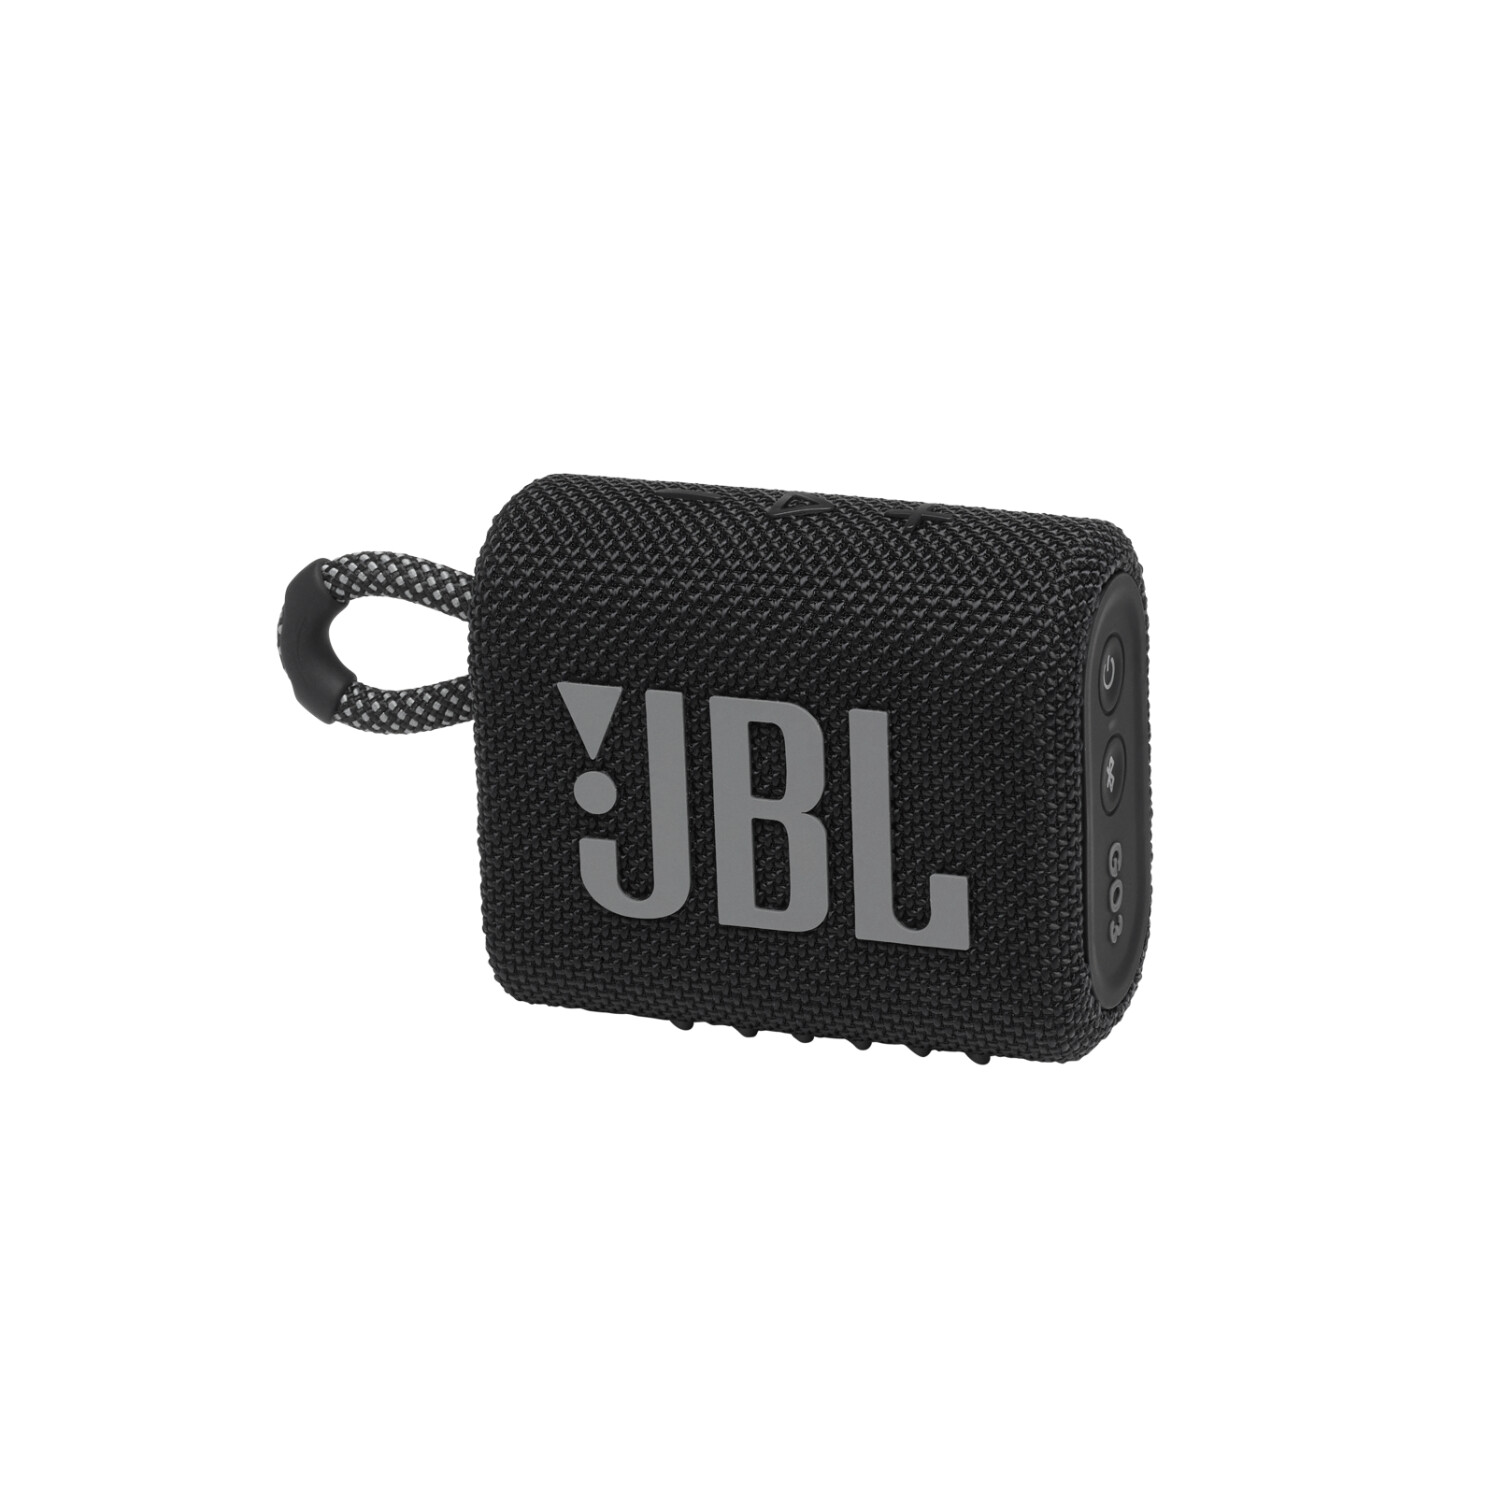 Test de la JBL Go : Avis sur la mini-enceinte Bluetooth à petit prix !